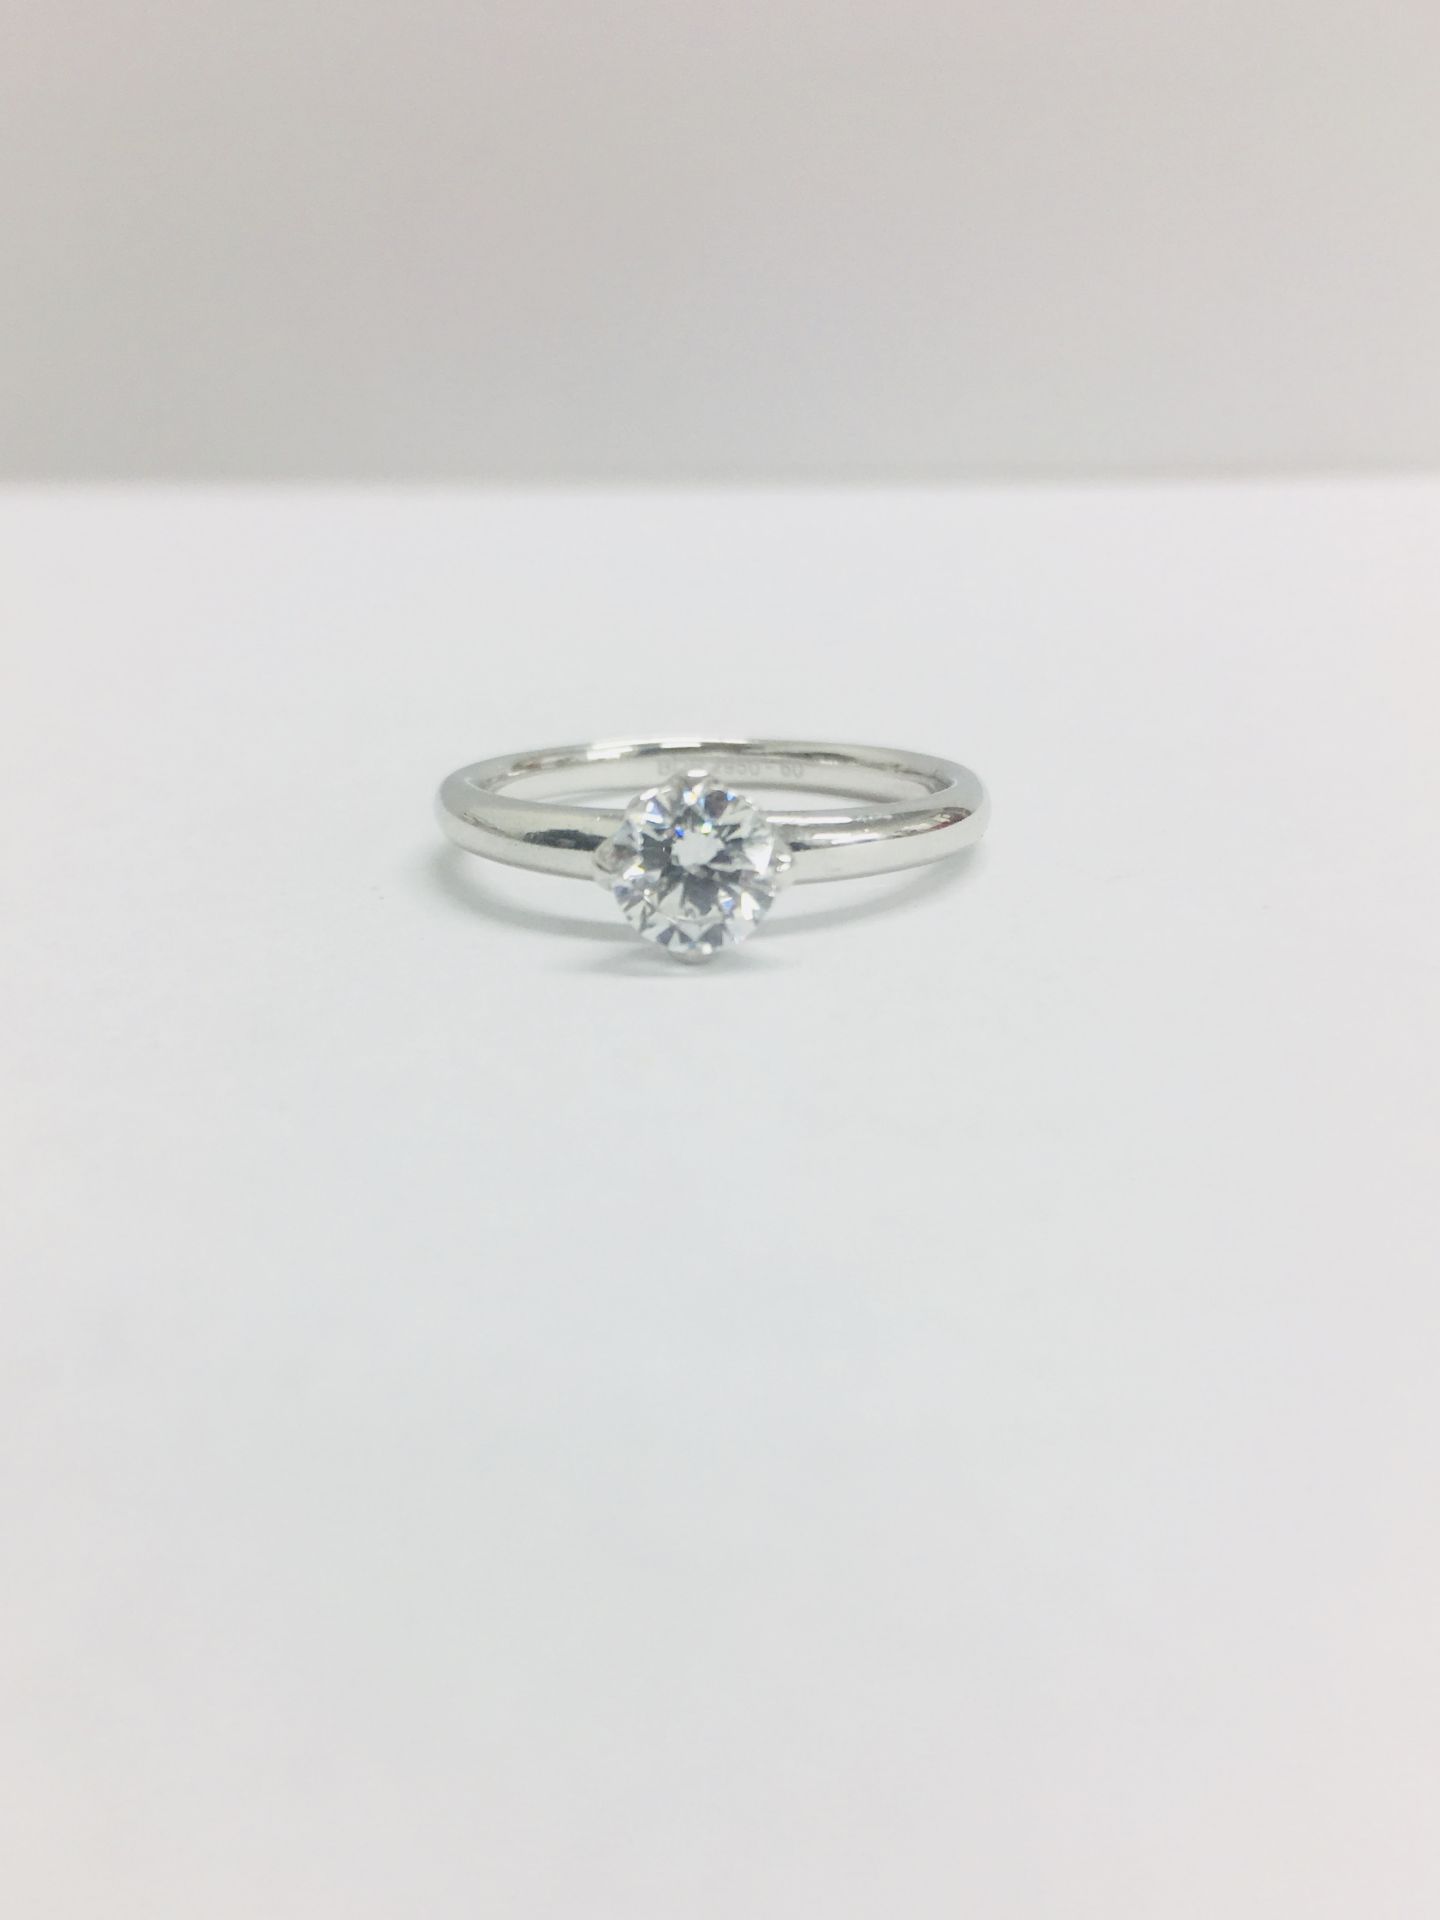 Platinum diamond solitaire ring,0.50ct brillliant cut diamond D colour vs clarity,2.9gms platinum ,